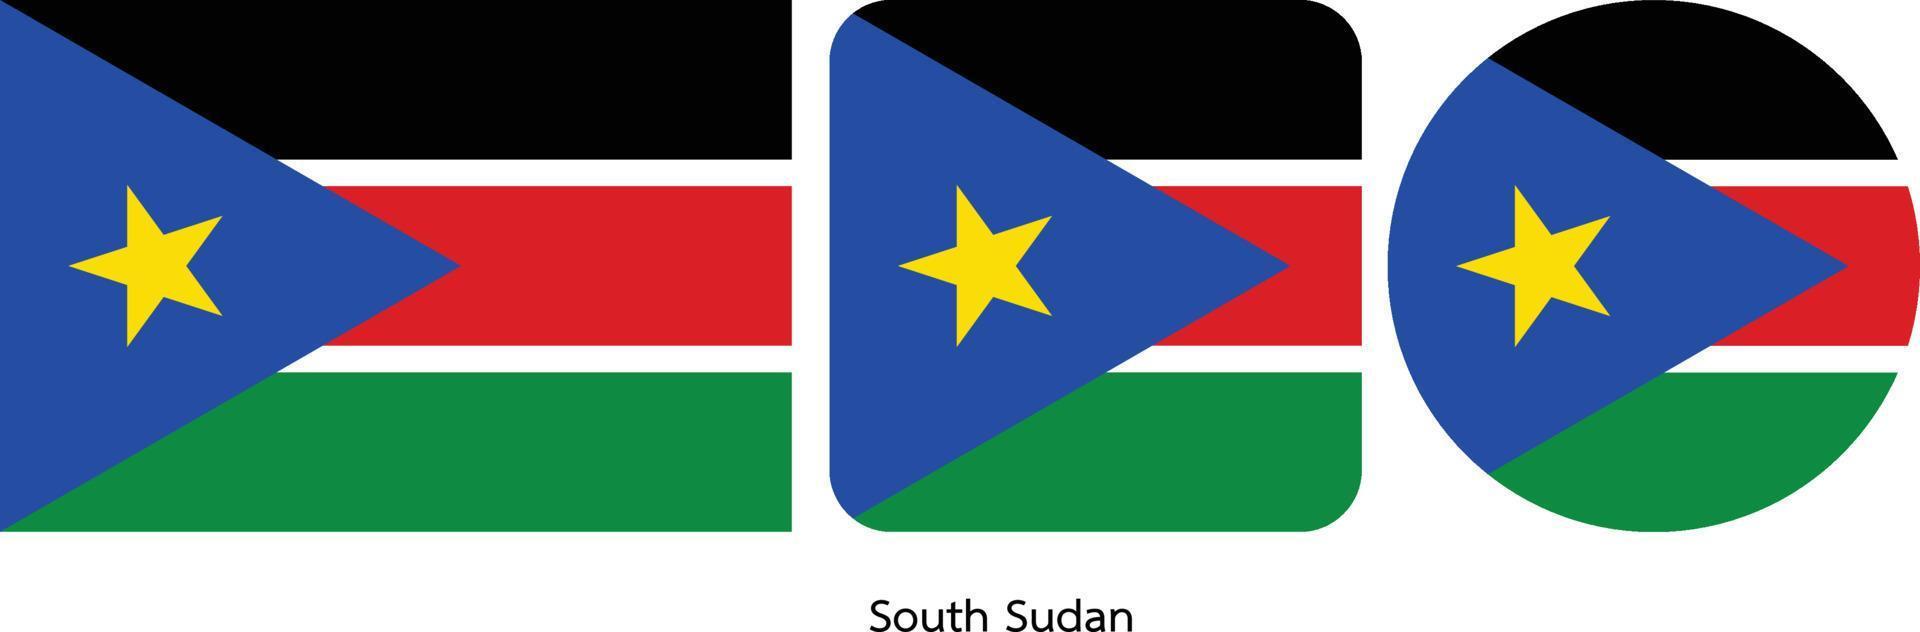 bandiera del sud sudan, illustrazione vettoriale